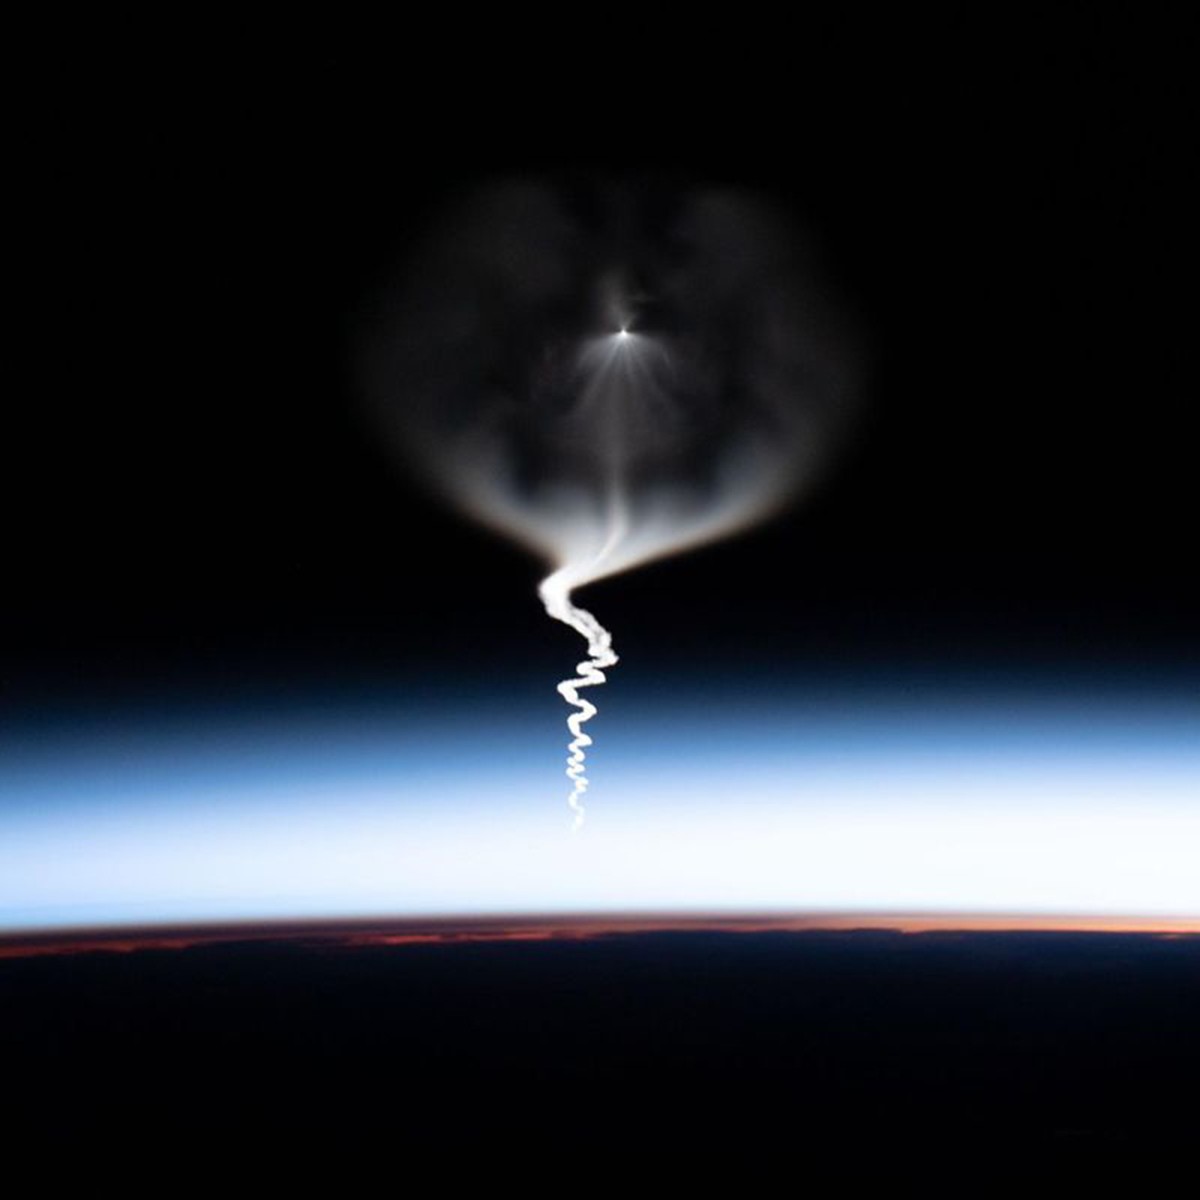 Phi hành gia Christina Koch ghi lại khoảnh khắc tàu vũ trụ Soyuz xuyên qua bầu khí quyển Trái Đất, chở đồng nghiệp Jessica Meir lên Trạm Vũ trụ Quốc tế (ISS). Vào ngày 18/10, bộ đôi này trở thành đội nữ phi hành gia đầu tiên thực hiện chuyến đi bộ ngoài không gian với nhiệm vụ thay thế thiết bị sạc bị hỏng trên ISS.